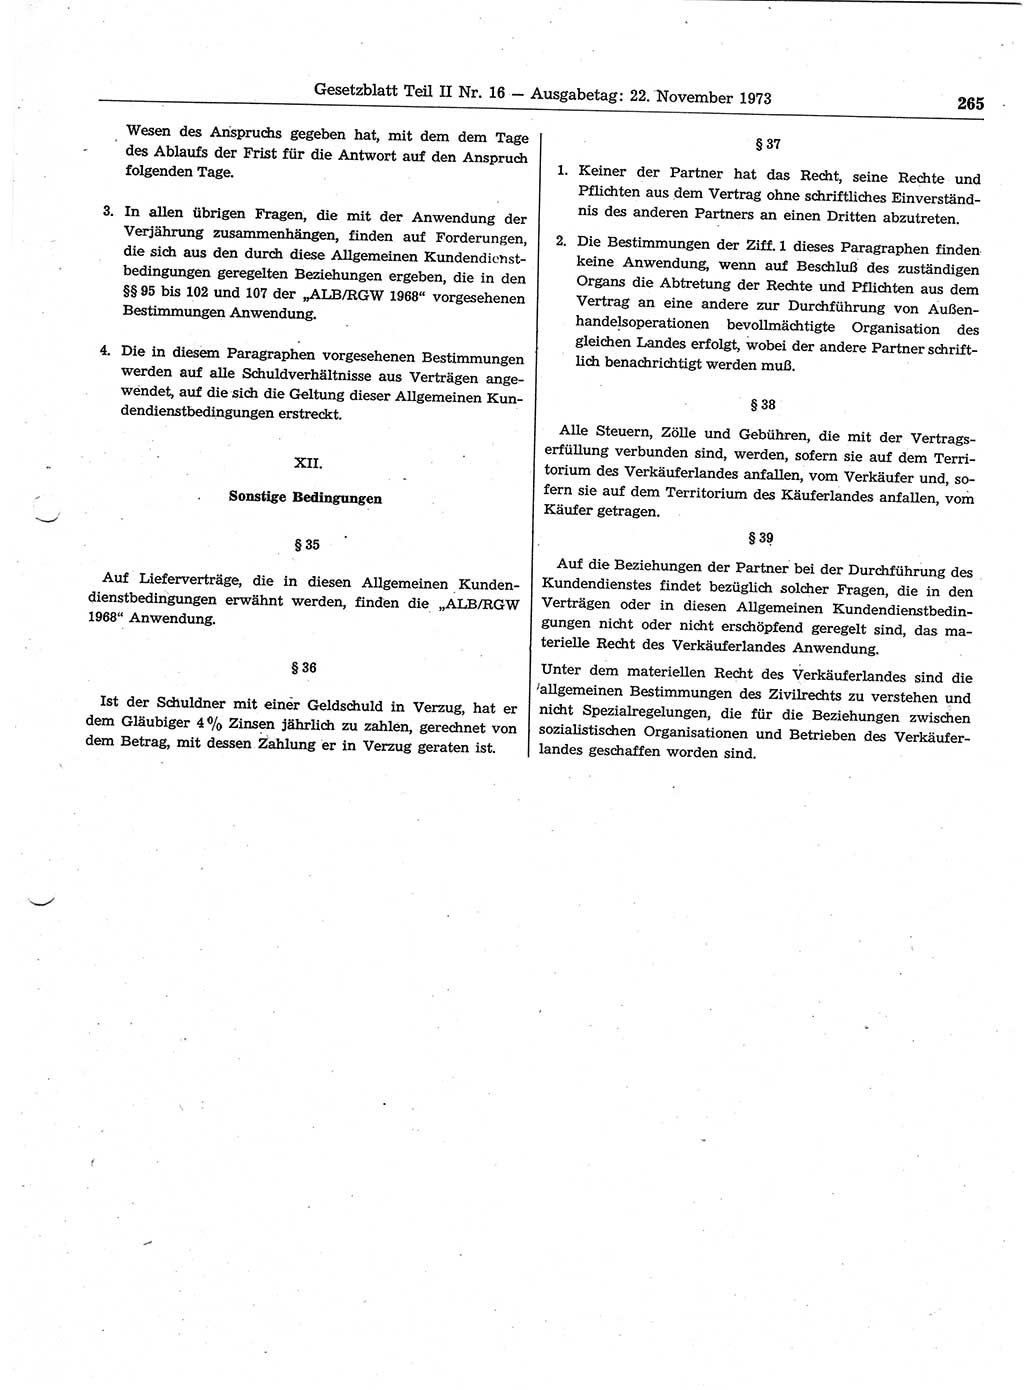 Gesetzblatt (GBl.) der Deutschen Demokratischen Republik (DDR) Teil ⅠⅠ 1973, Seite 265 (GBl. DDR ⅠⅠ 1973, S. 265)